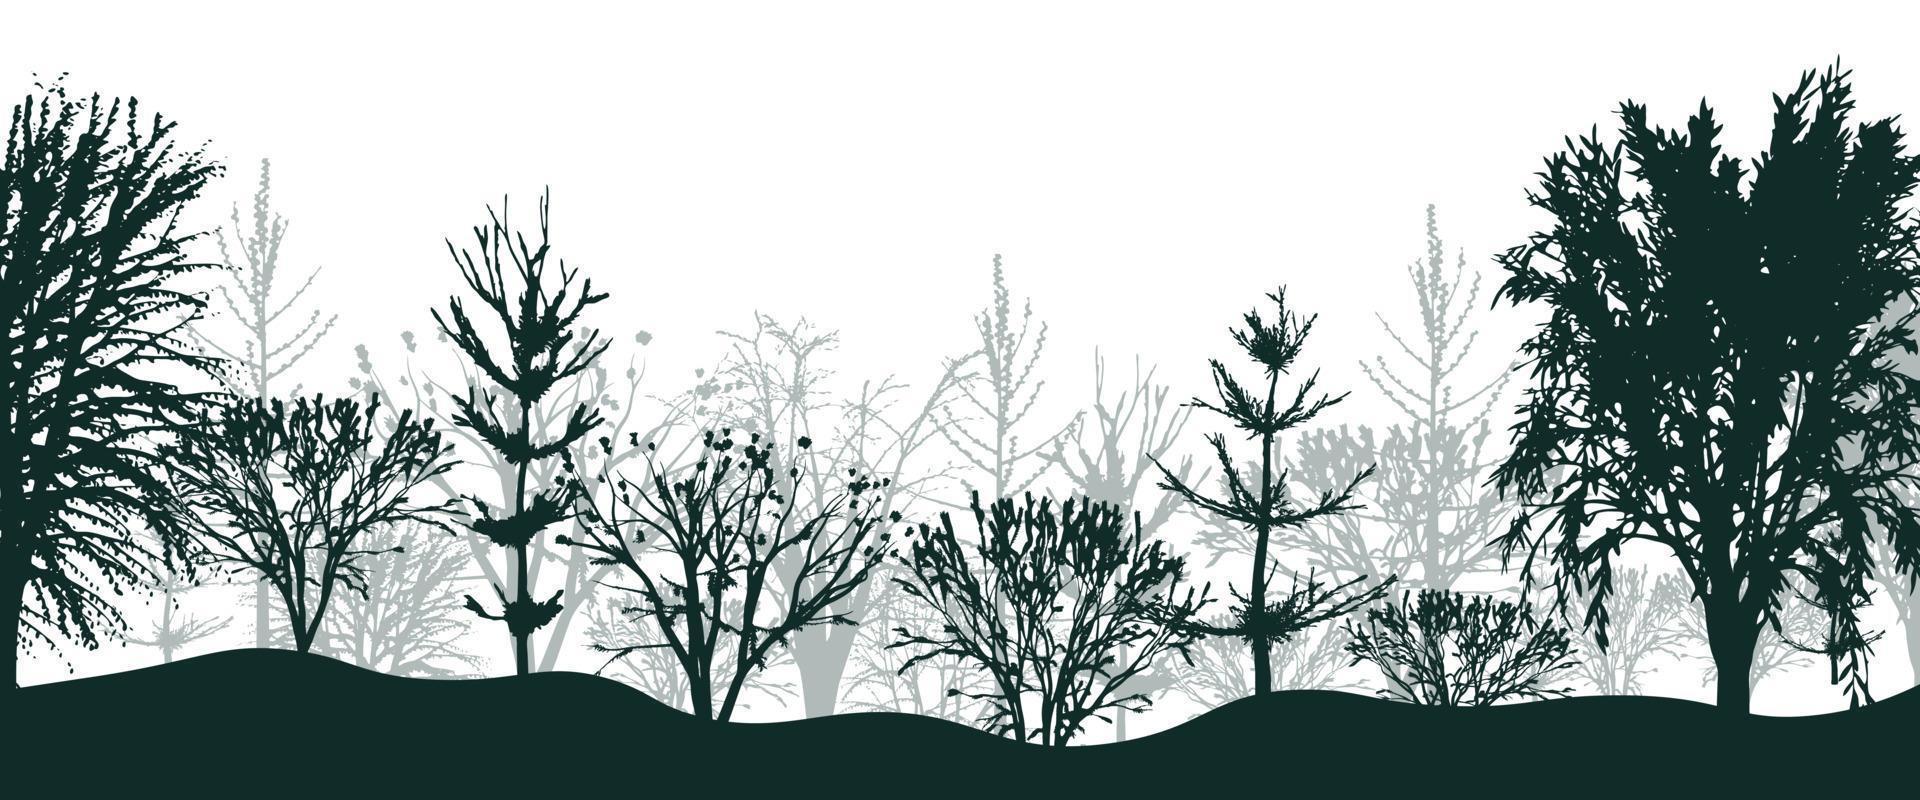 svart silhuetter av träd i skog bakgrund. mystisk snår av gran och bokar med buskar i ljus dimma. mystisk landskap i naturlig vektor design